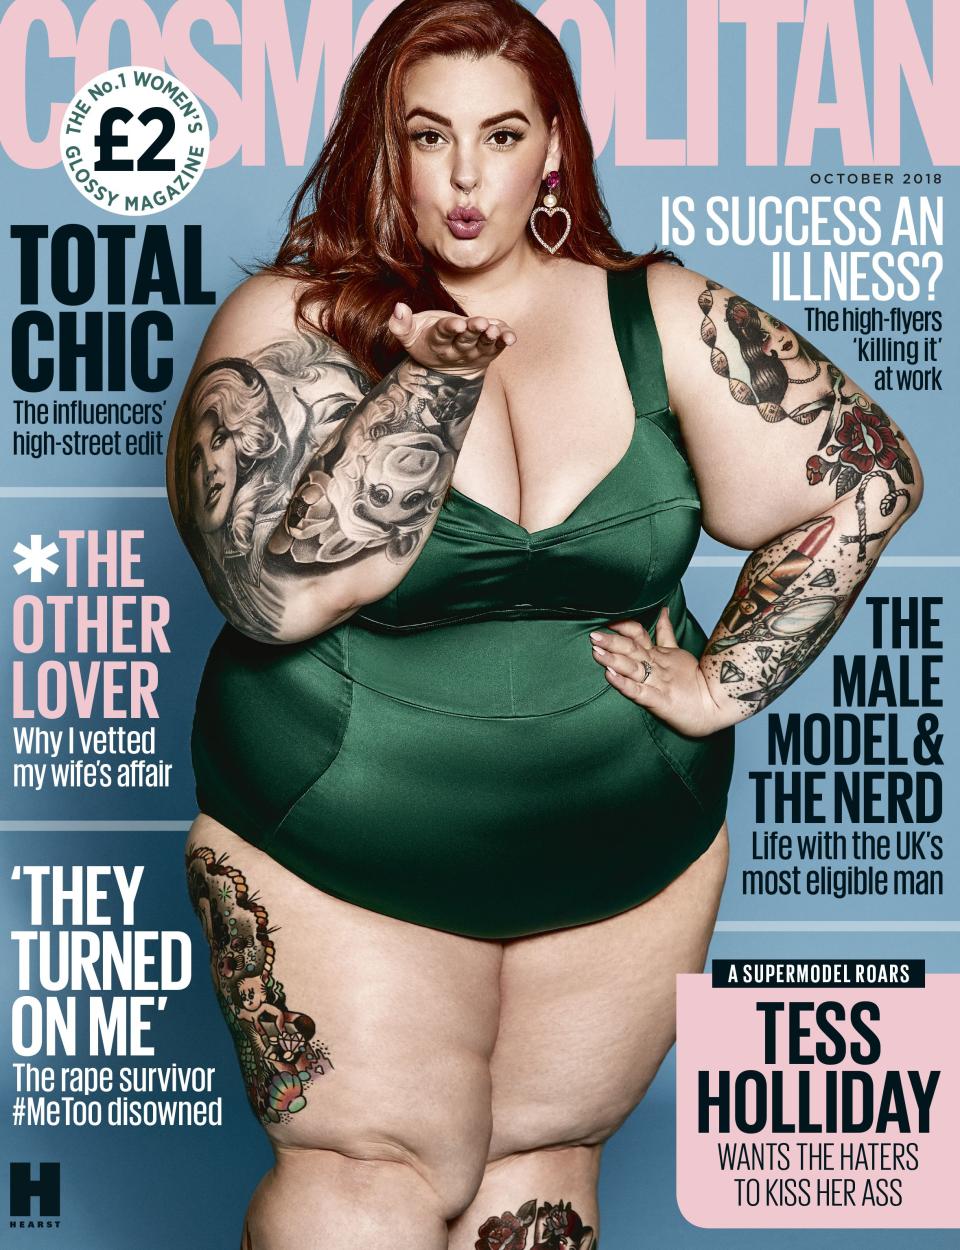 <p>Stolz zeigte sich das Plus-Size-Model Tess Holliday auf dem August-Cover der britischen „Cosmopolitan“ im knappen Badeanzug. Dafür musste sie im Netz einiges an Kritik einstecken. Sie konterte auf Twitter mit folgenden Worten: „An alle, die sagen, ich sei eine Belastung für das britische Gesundheitssystem: Ich bin Amerikanerin, also müsst ihr euch keine Sorgen um meinen fetten Arsch machen. Sorgt euch lieber darum, was für schreckliche Menschen ihr sein müsst, wenn euer kleingeistiges Leben von mir und meinem Cover auf einem Hochglanzmagazin beeinflusst wird.“ (Bild: Comsopolitan) </p>